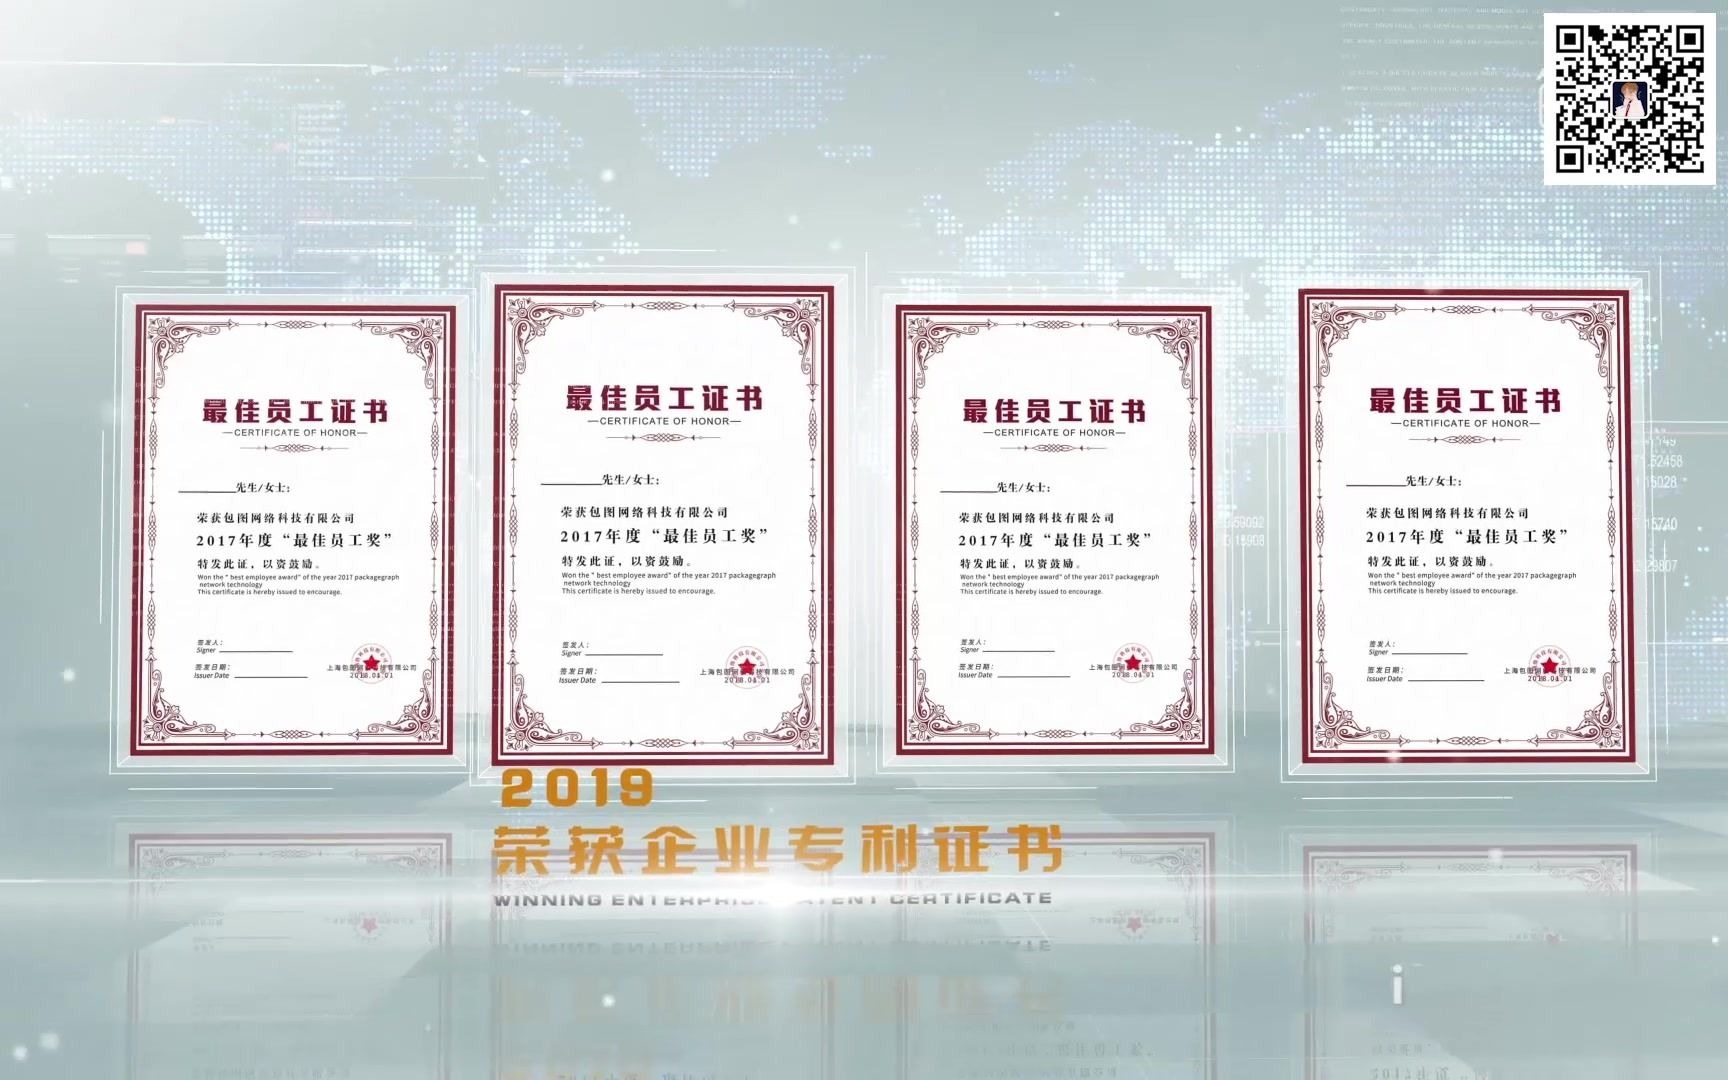 干净整洁企业荣誉证书展示ae模板, 新奇艺,985